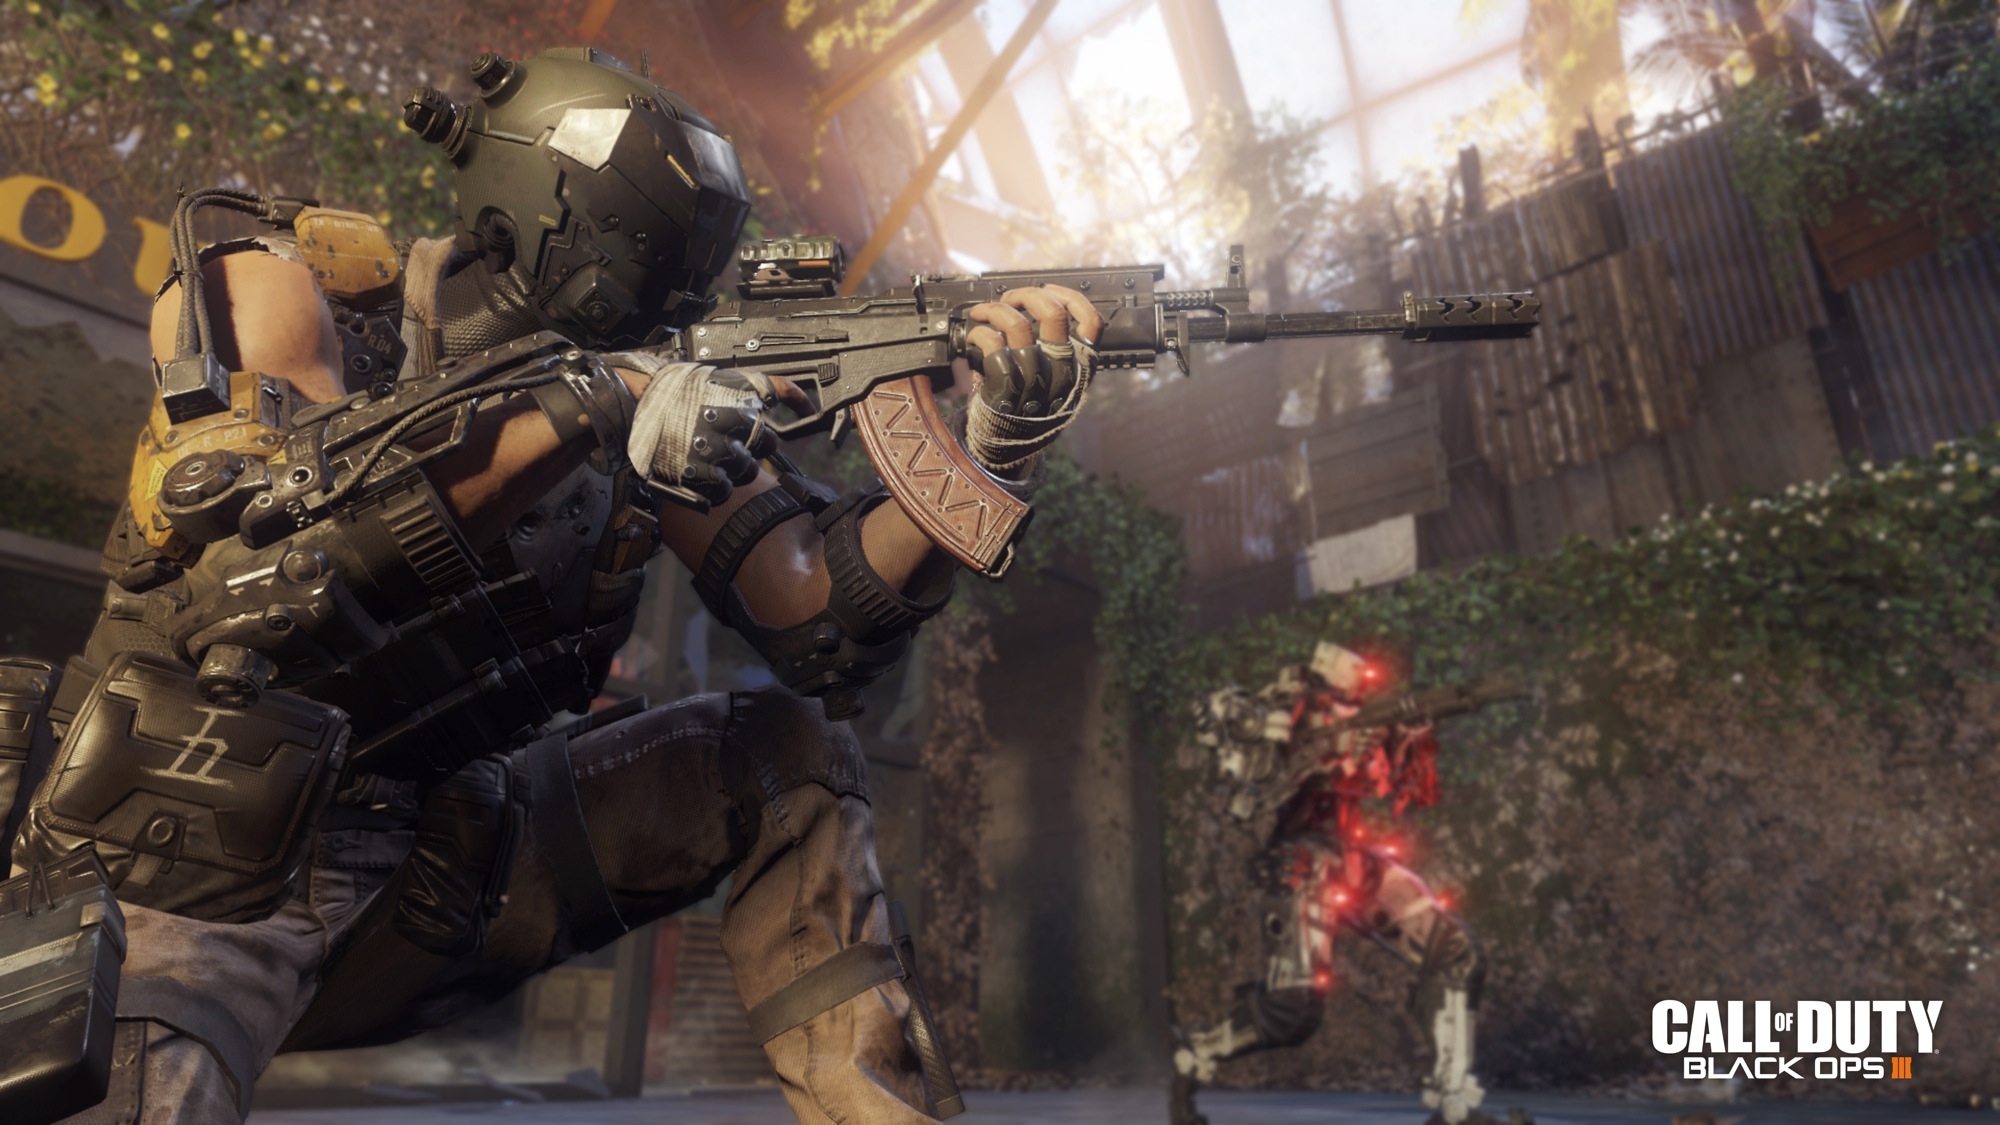 Скриншот из игры Call of Duty: Black Ops 3 под номером 16